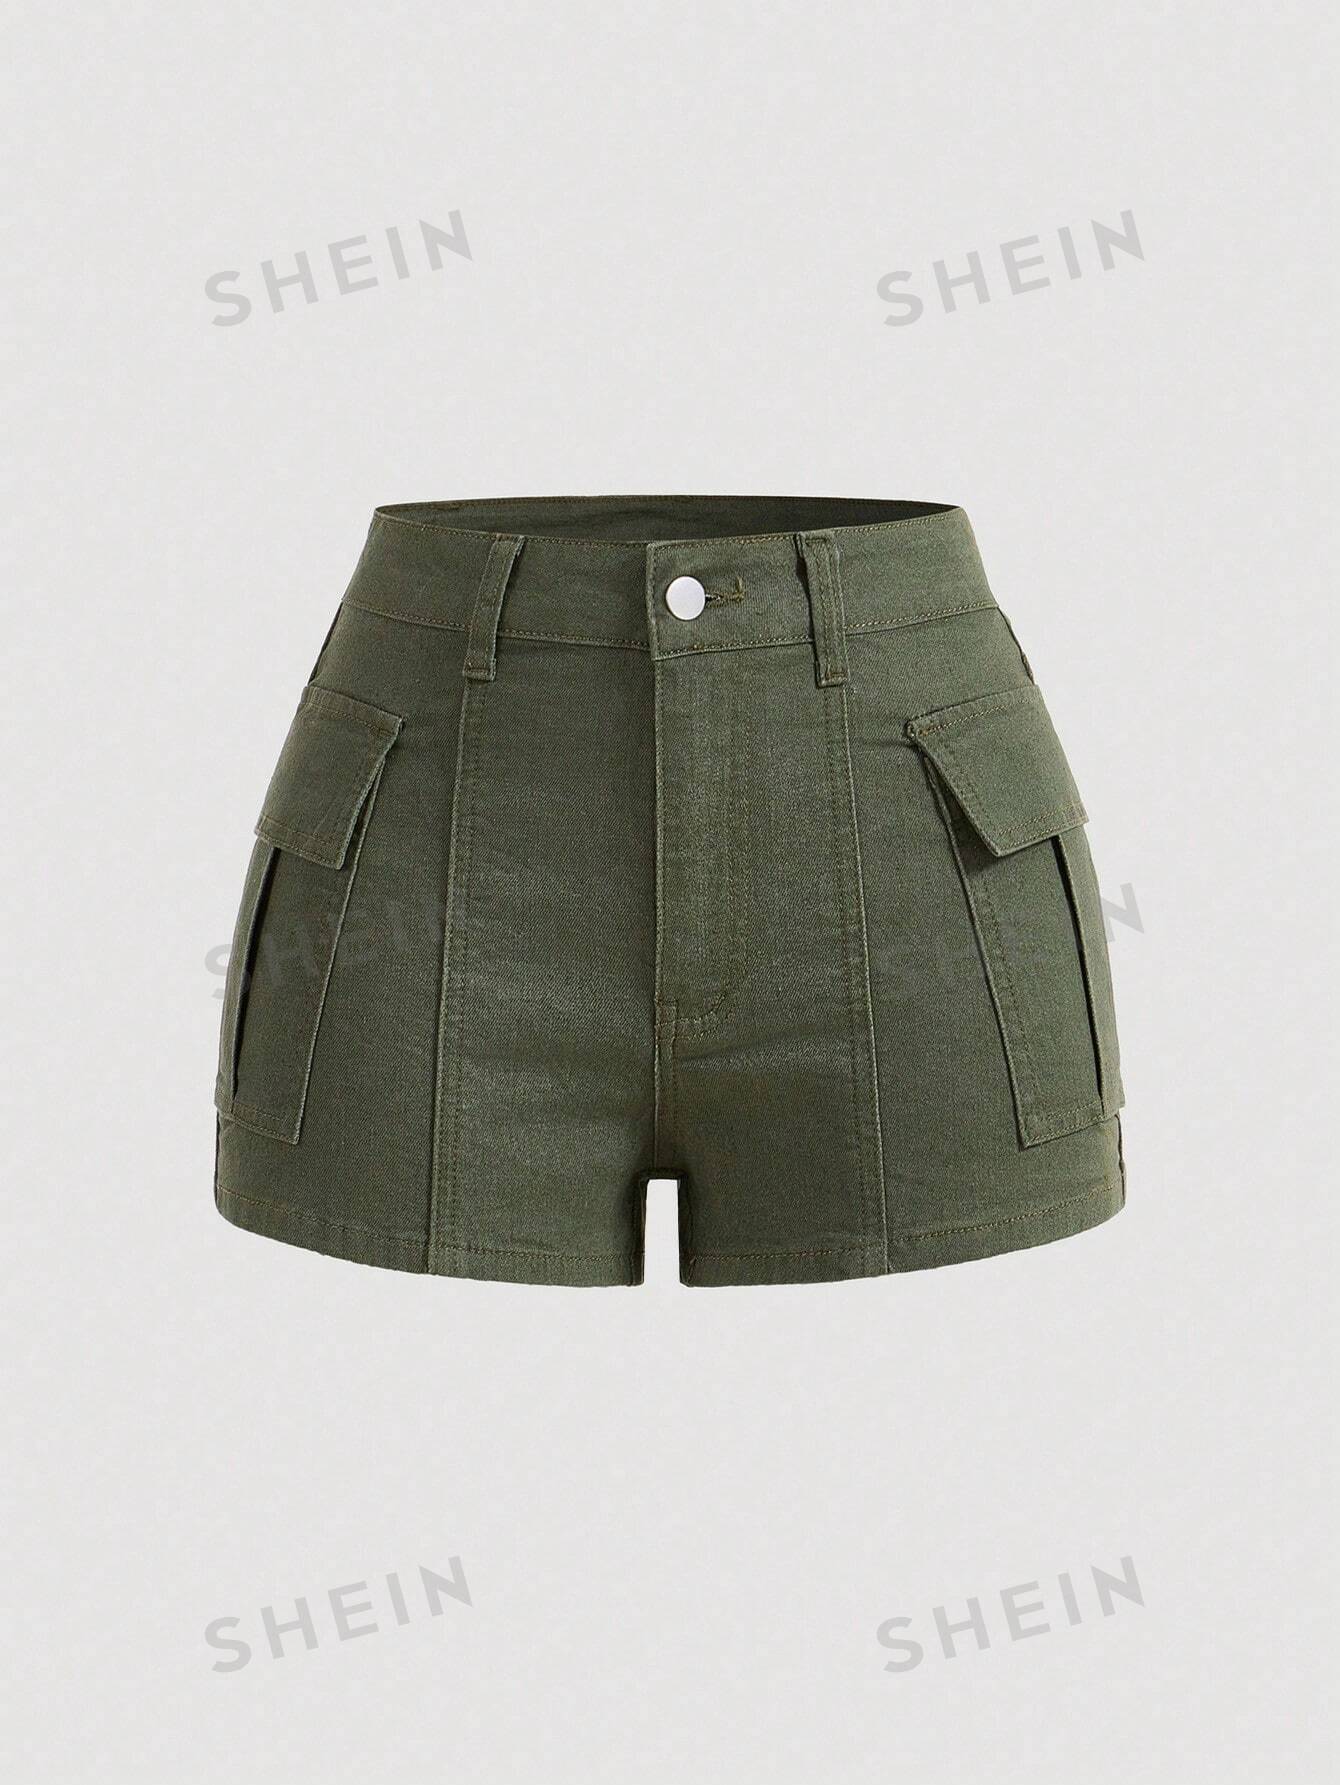 SHEIN MOD Женские популярные шорты, джинсовые джинсовые шорты, оливково-зеленый шорты женские лаймовые